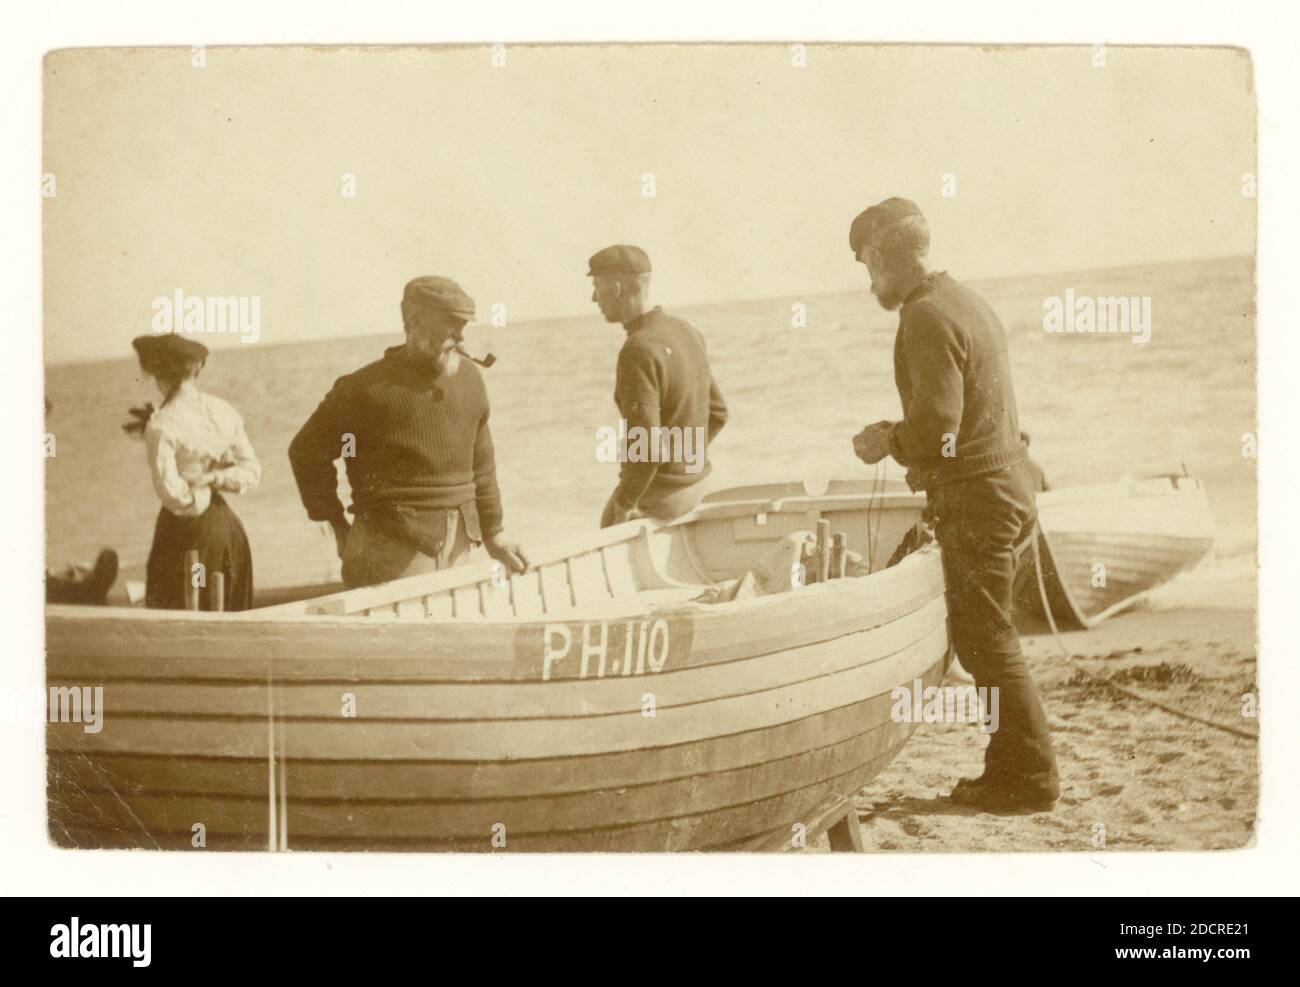 Gruppo fotografico originale dei primi anni del 1900 con tonalità seppia accanto alle loro barche che sono tirate in su sulla riva, preparandosi ad andare in mare, possibilmente pesca con lenza, registrato a Plymouth come PH 110, Devon, Regno Unito circa 1910 Foto Stock